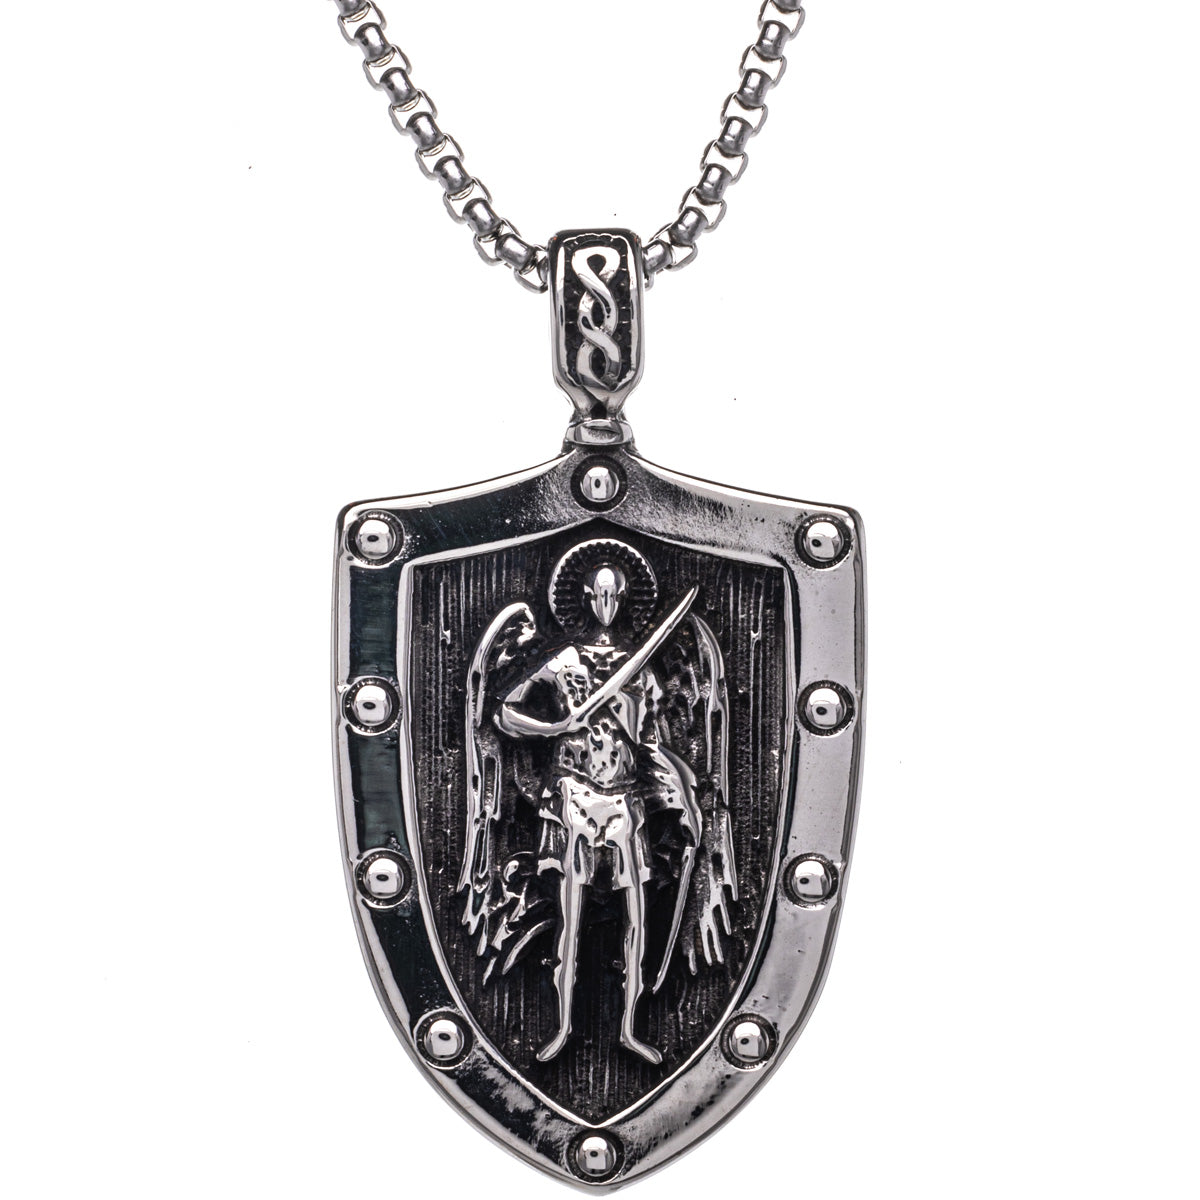 St Michael's shield pendant necklace (Steel 316L)